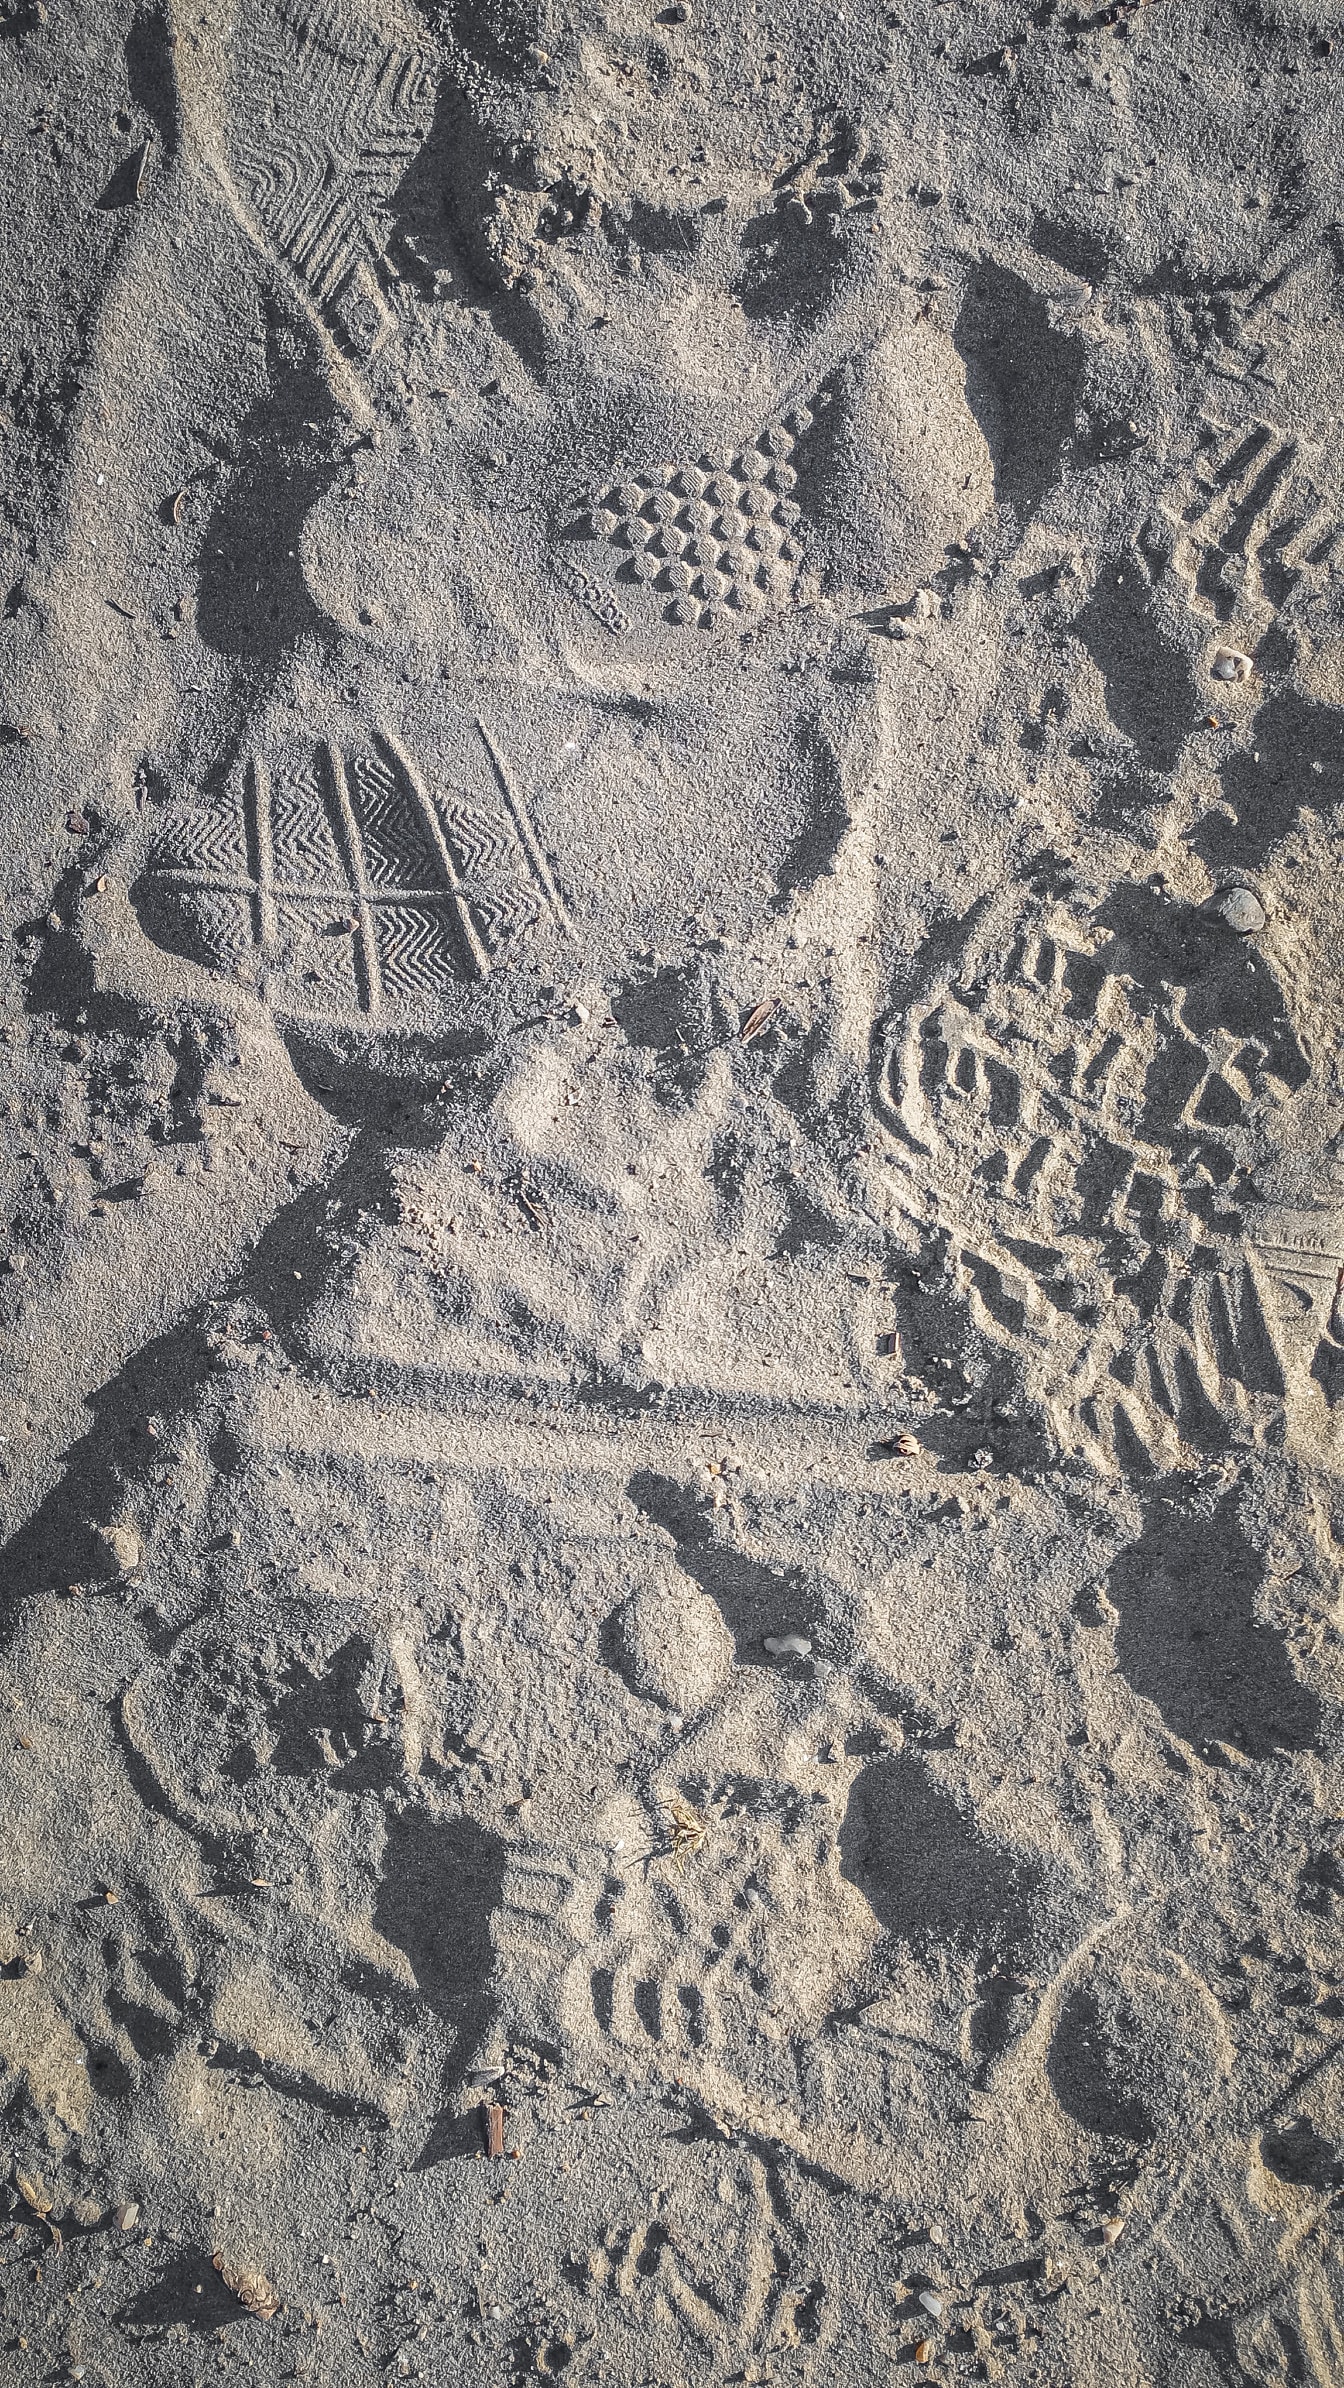 Tekstur kasar pasir dengan jejak kaki di permukaan